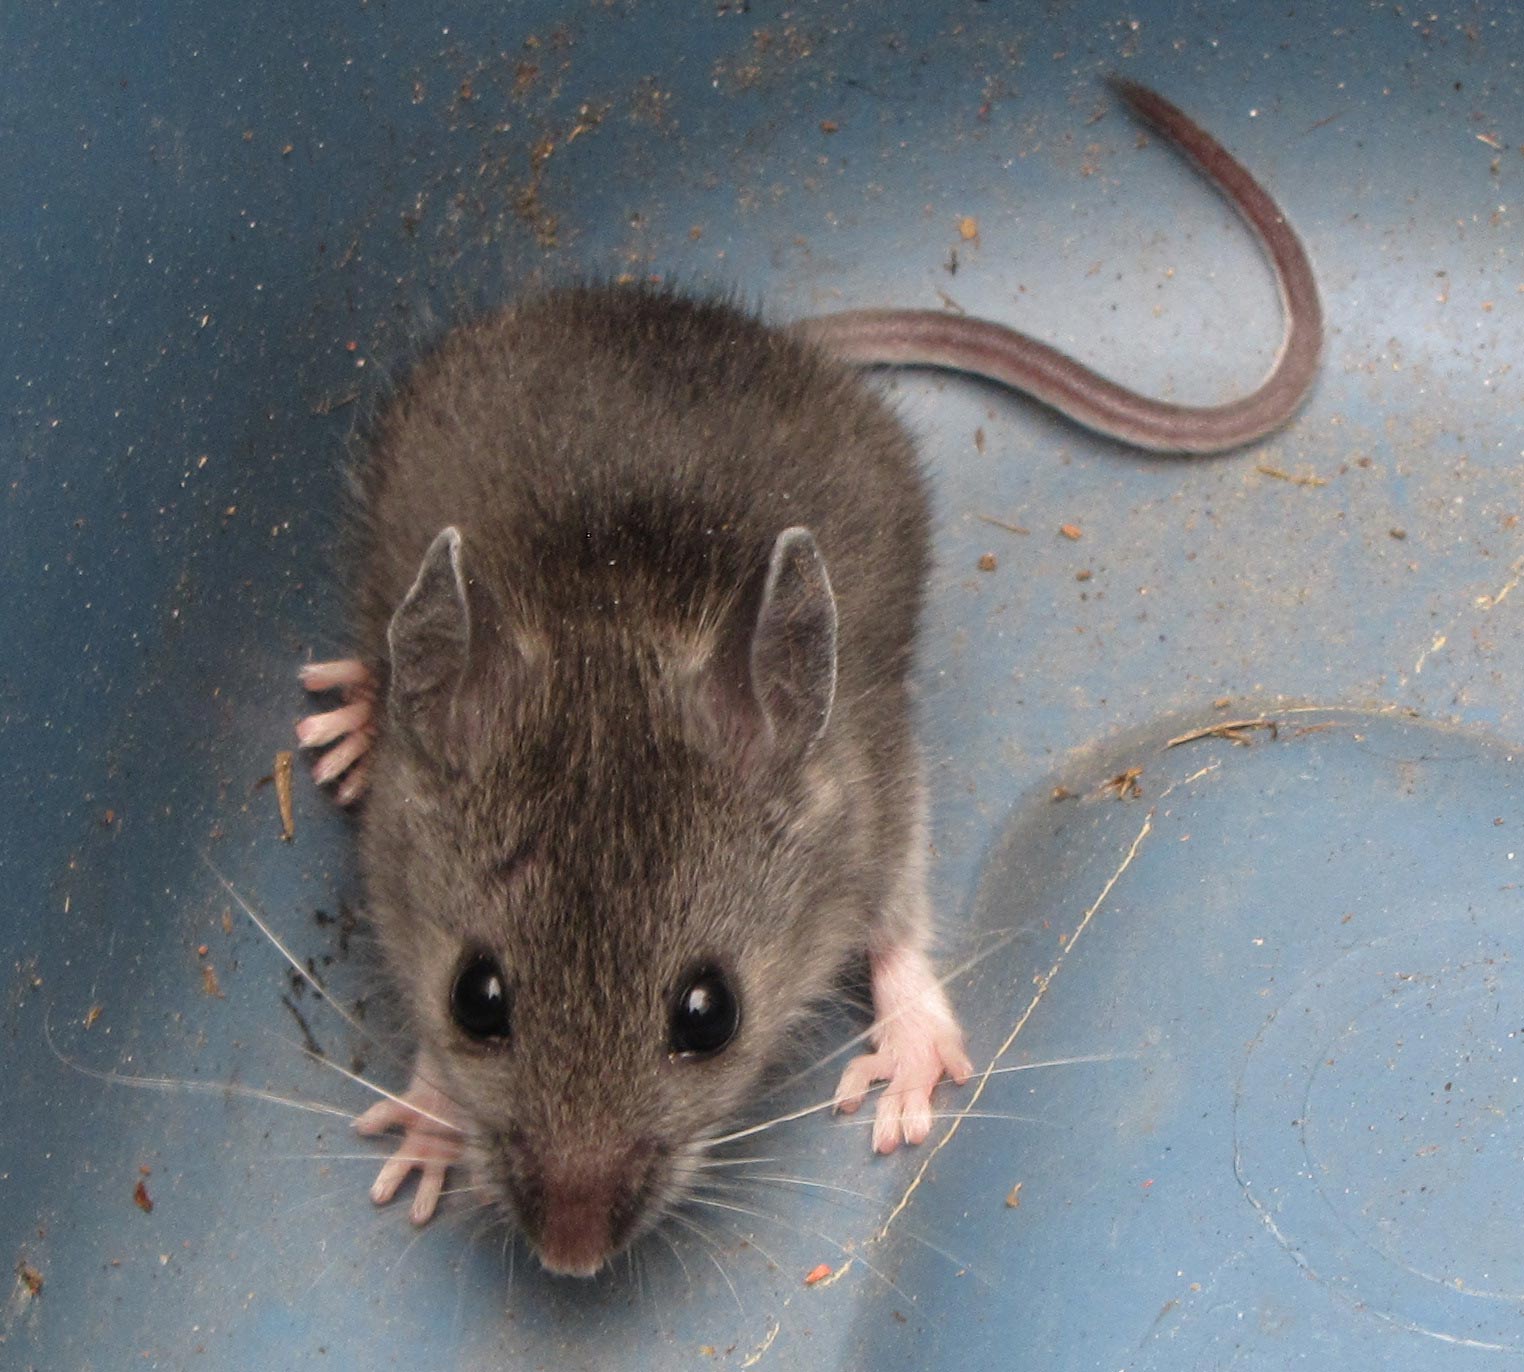 Мышь - виды, чем питаются, сколько живут, где живут, описание